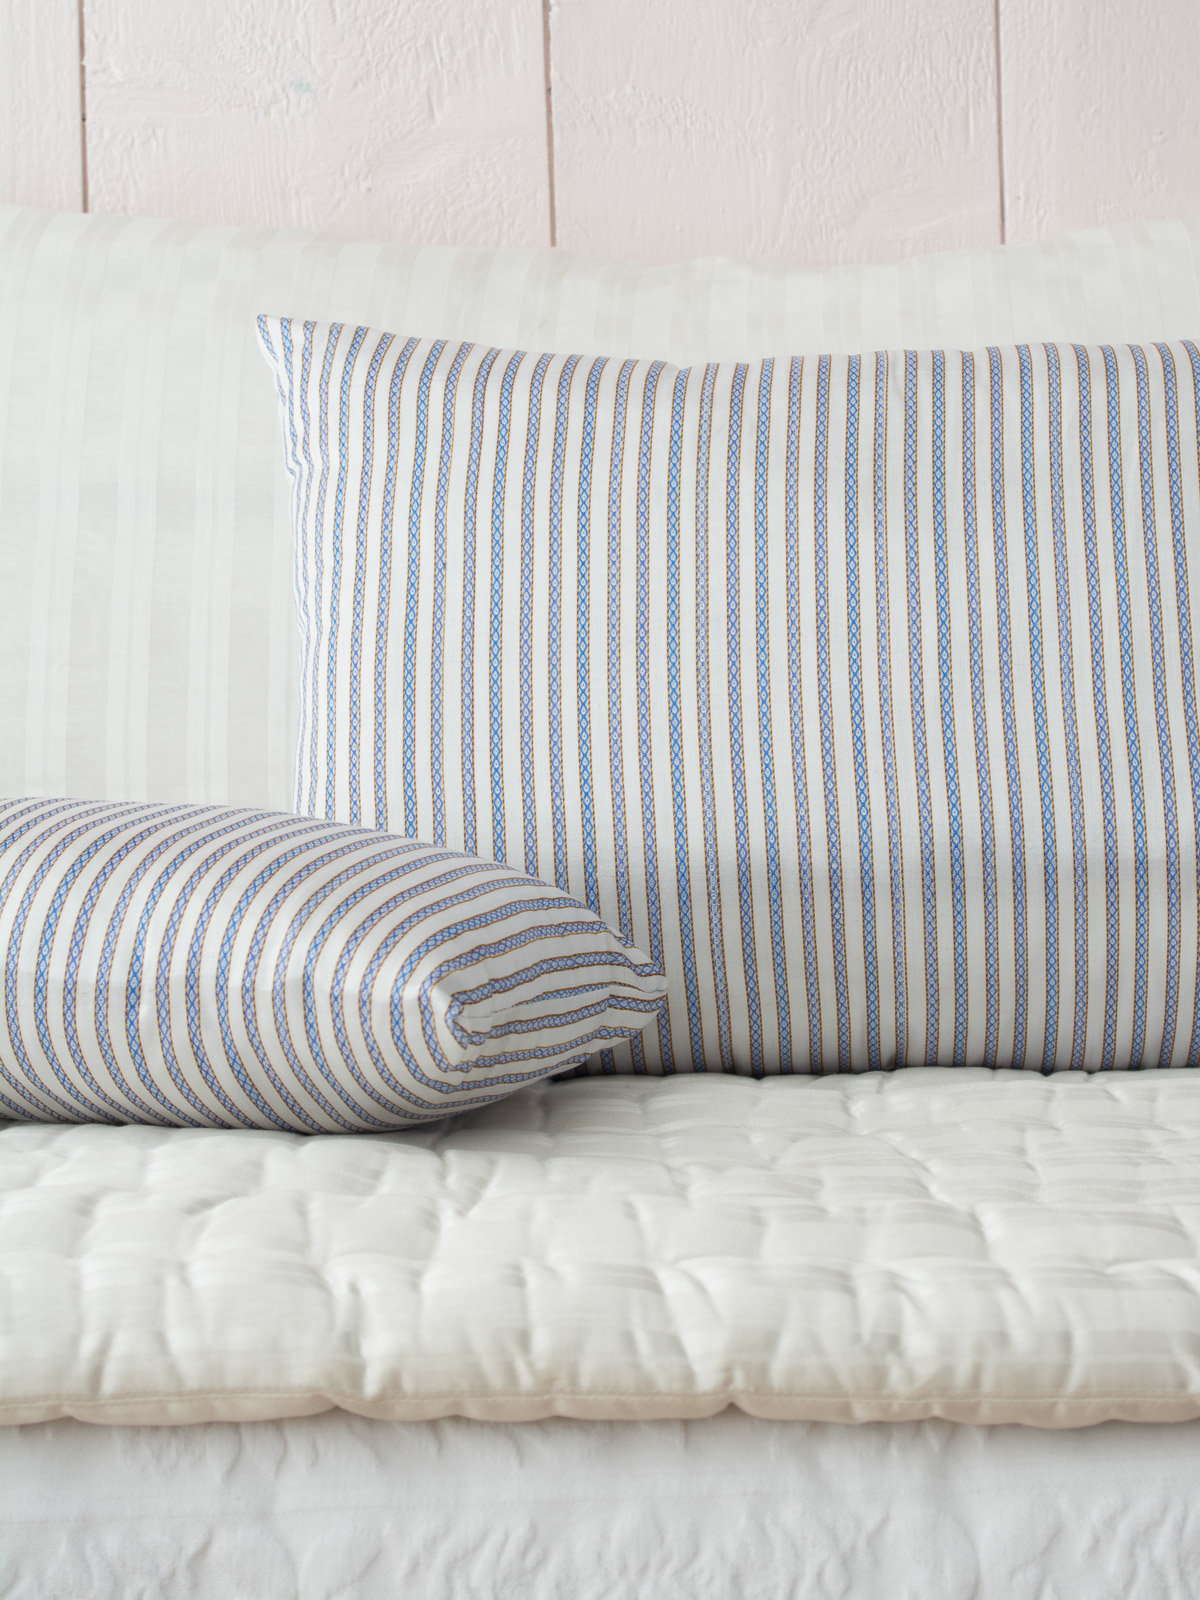 pillow 37x23 cm blue brown striped